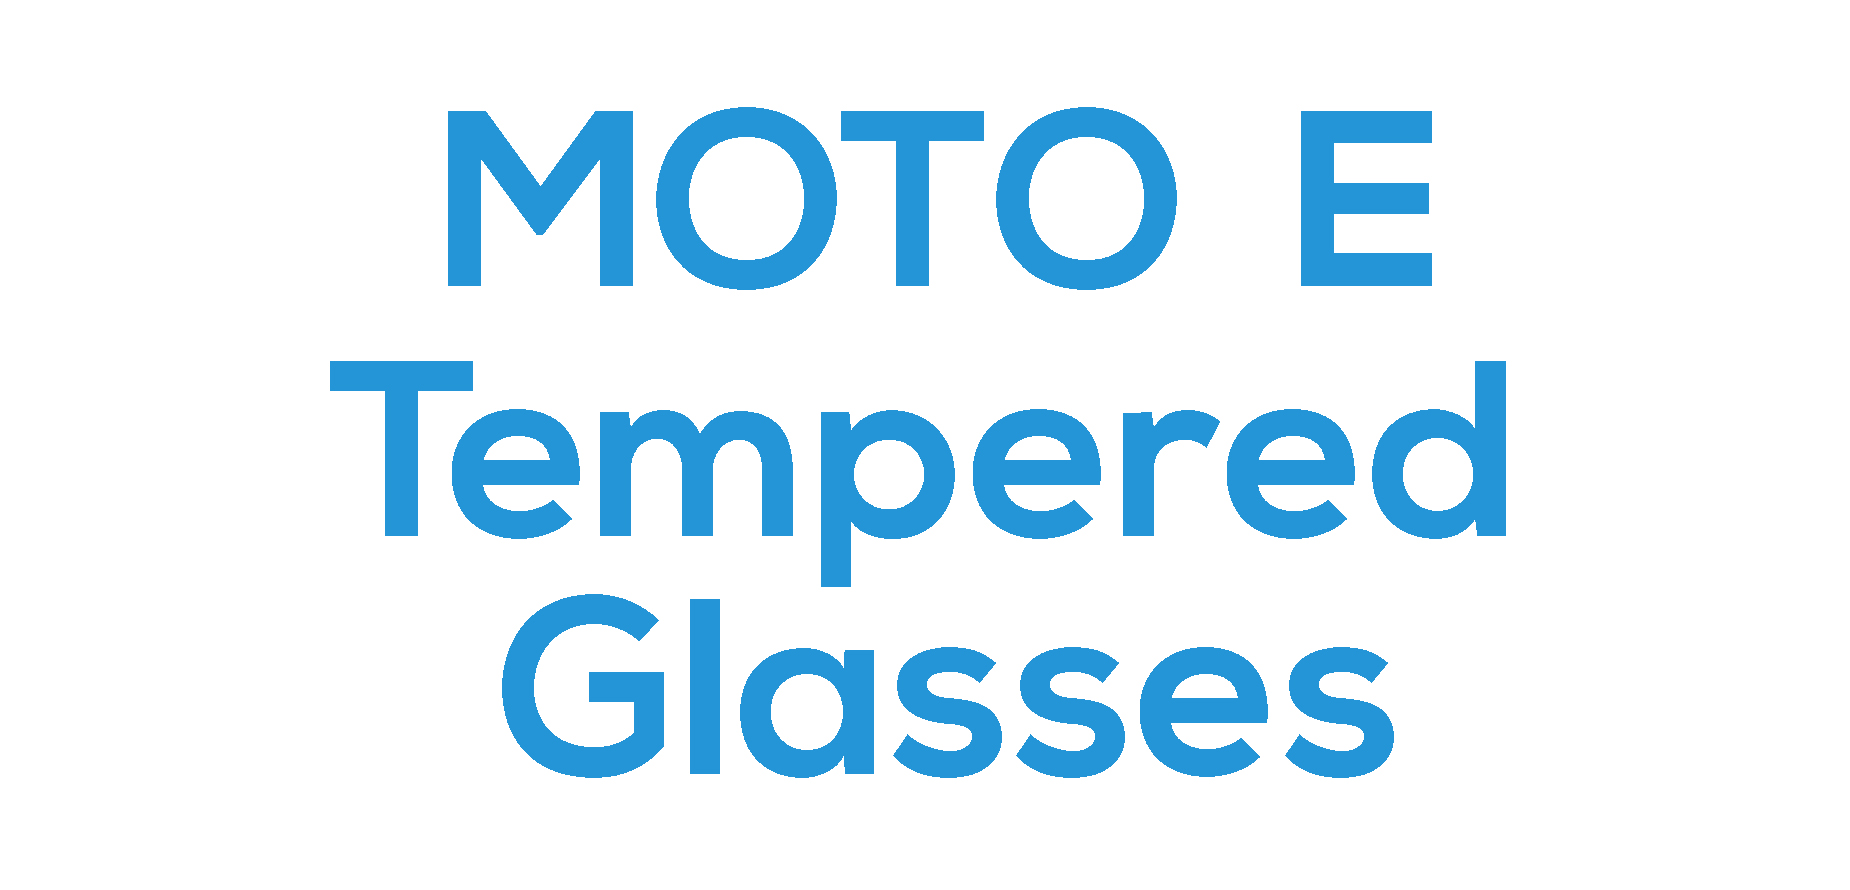 Moto E Tempered Glasses